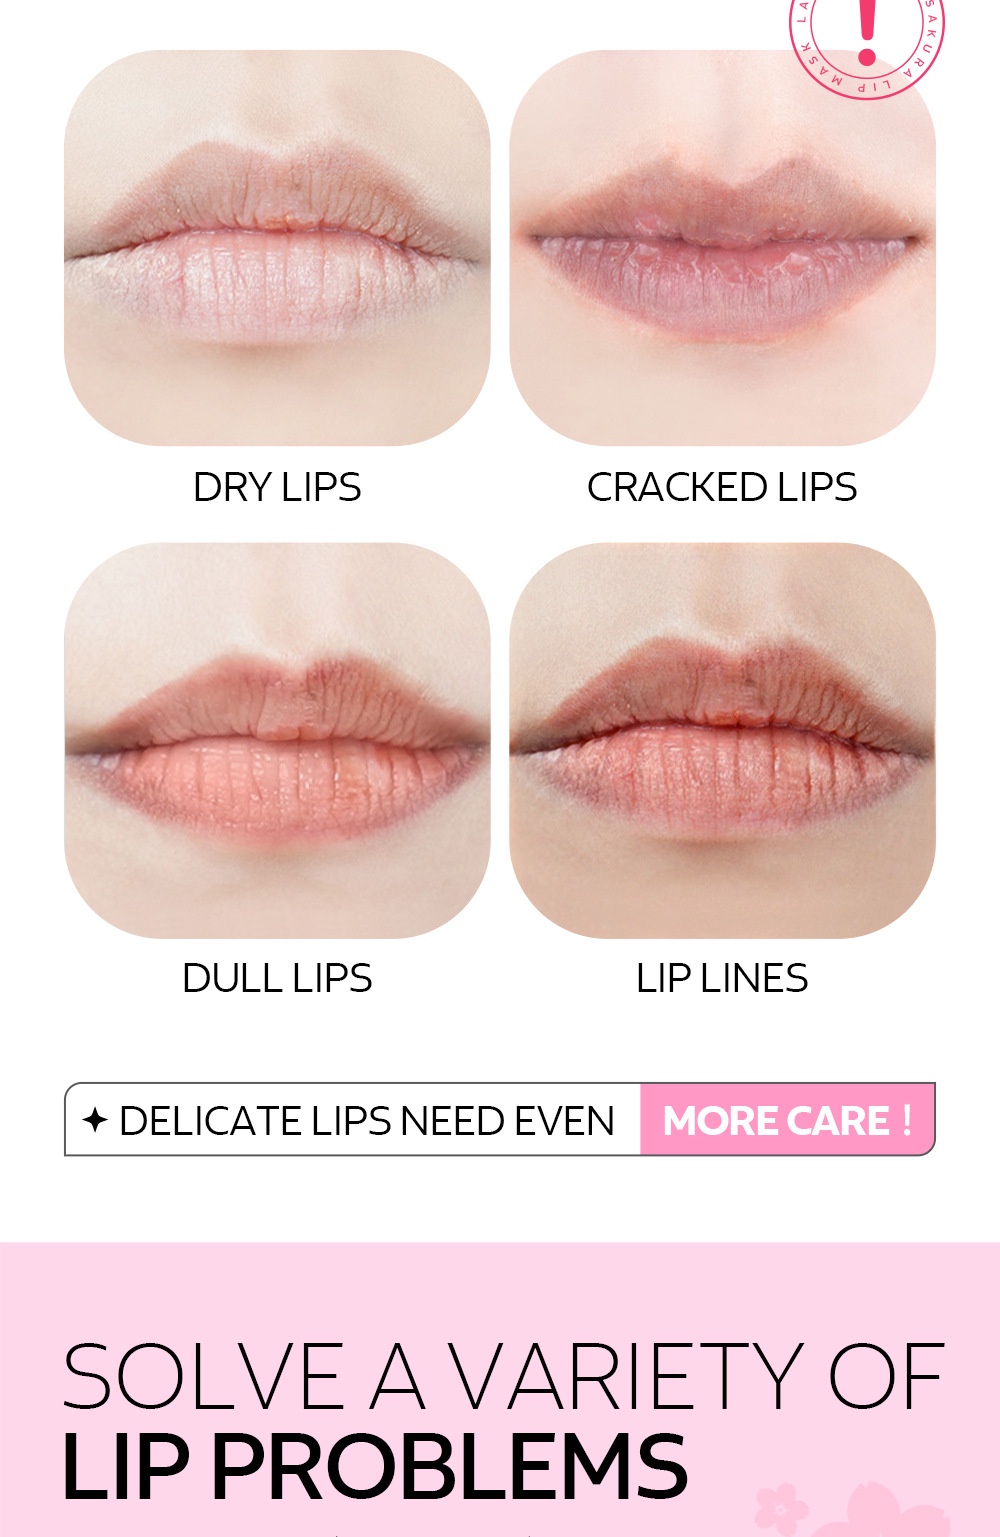 LAIKOU Japan Sakura Hydrating Collagen Lip Mask 5Pcs - SHOPPE.LK